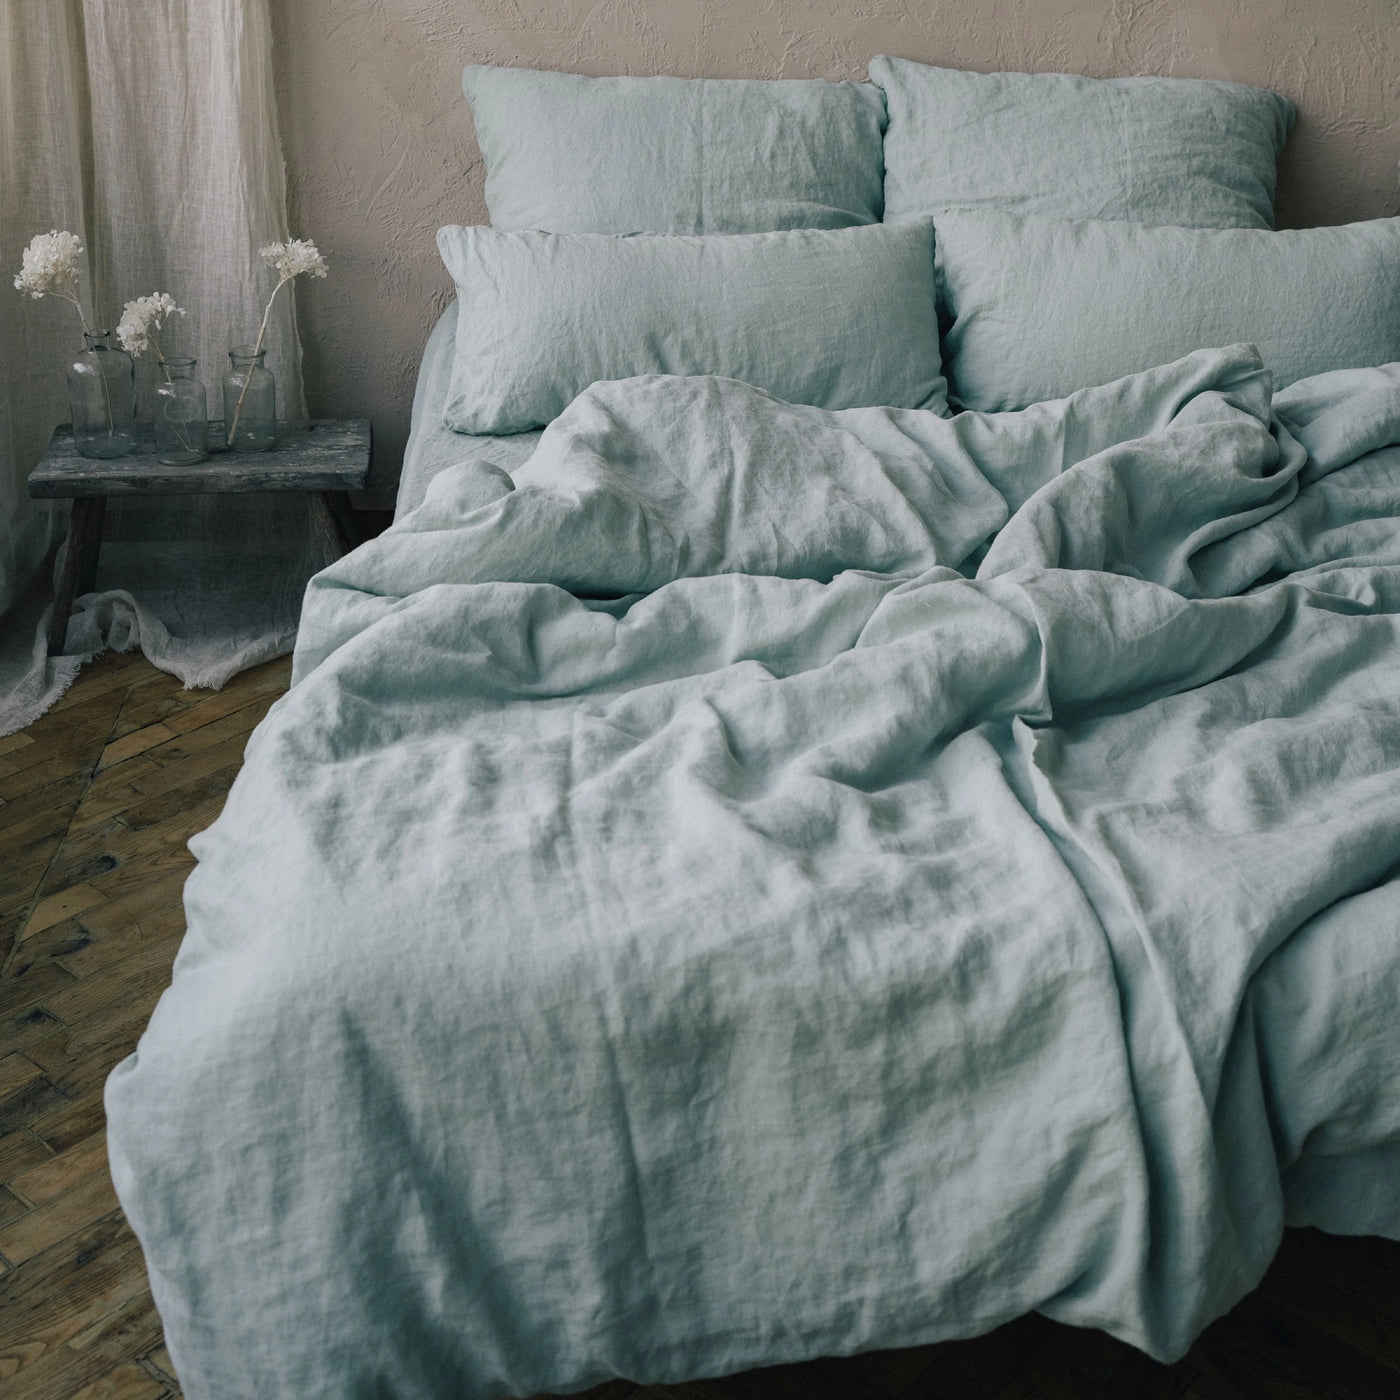 Linen bedding set 155x220 in Mint green